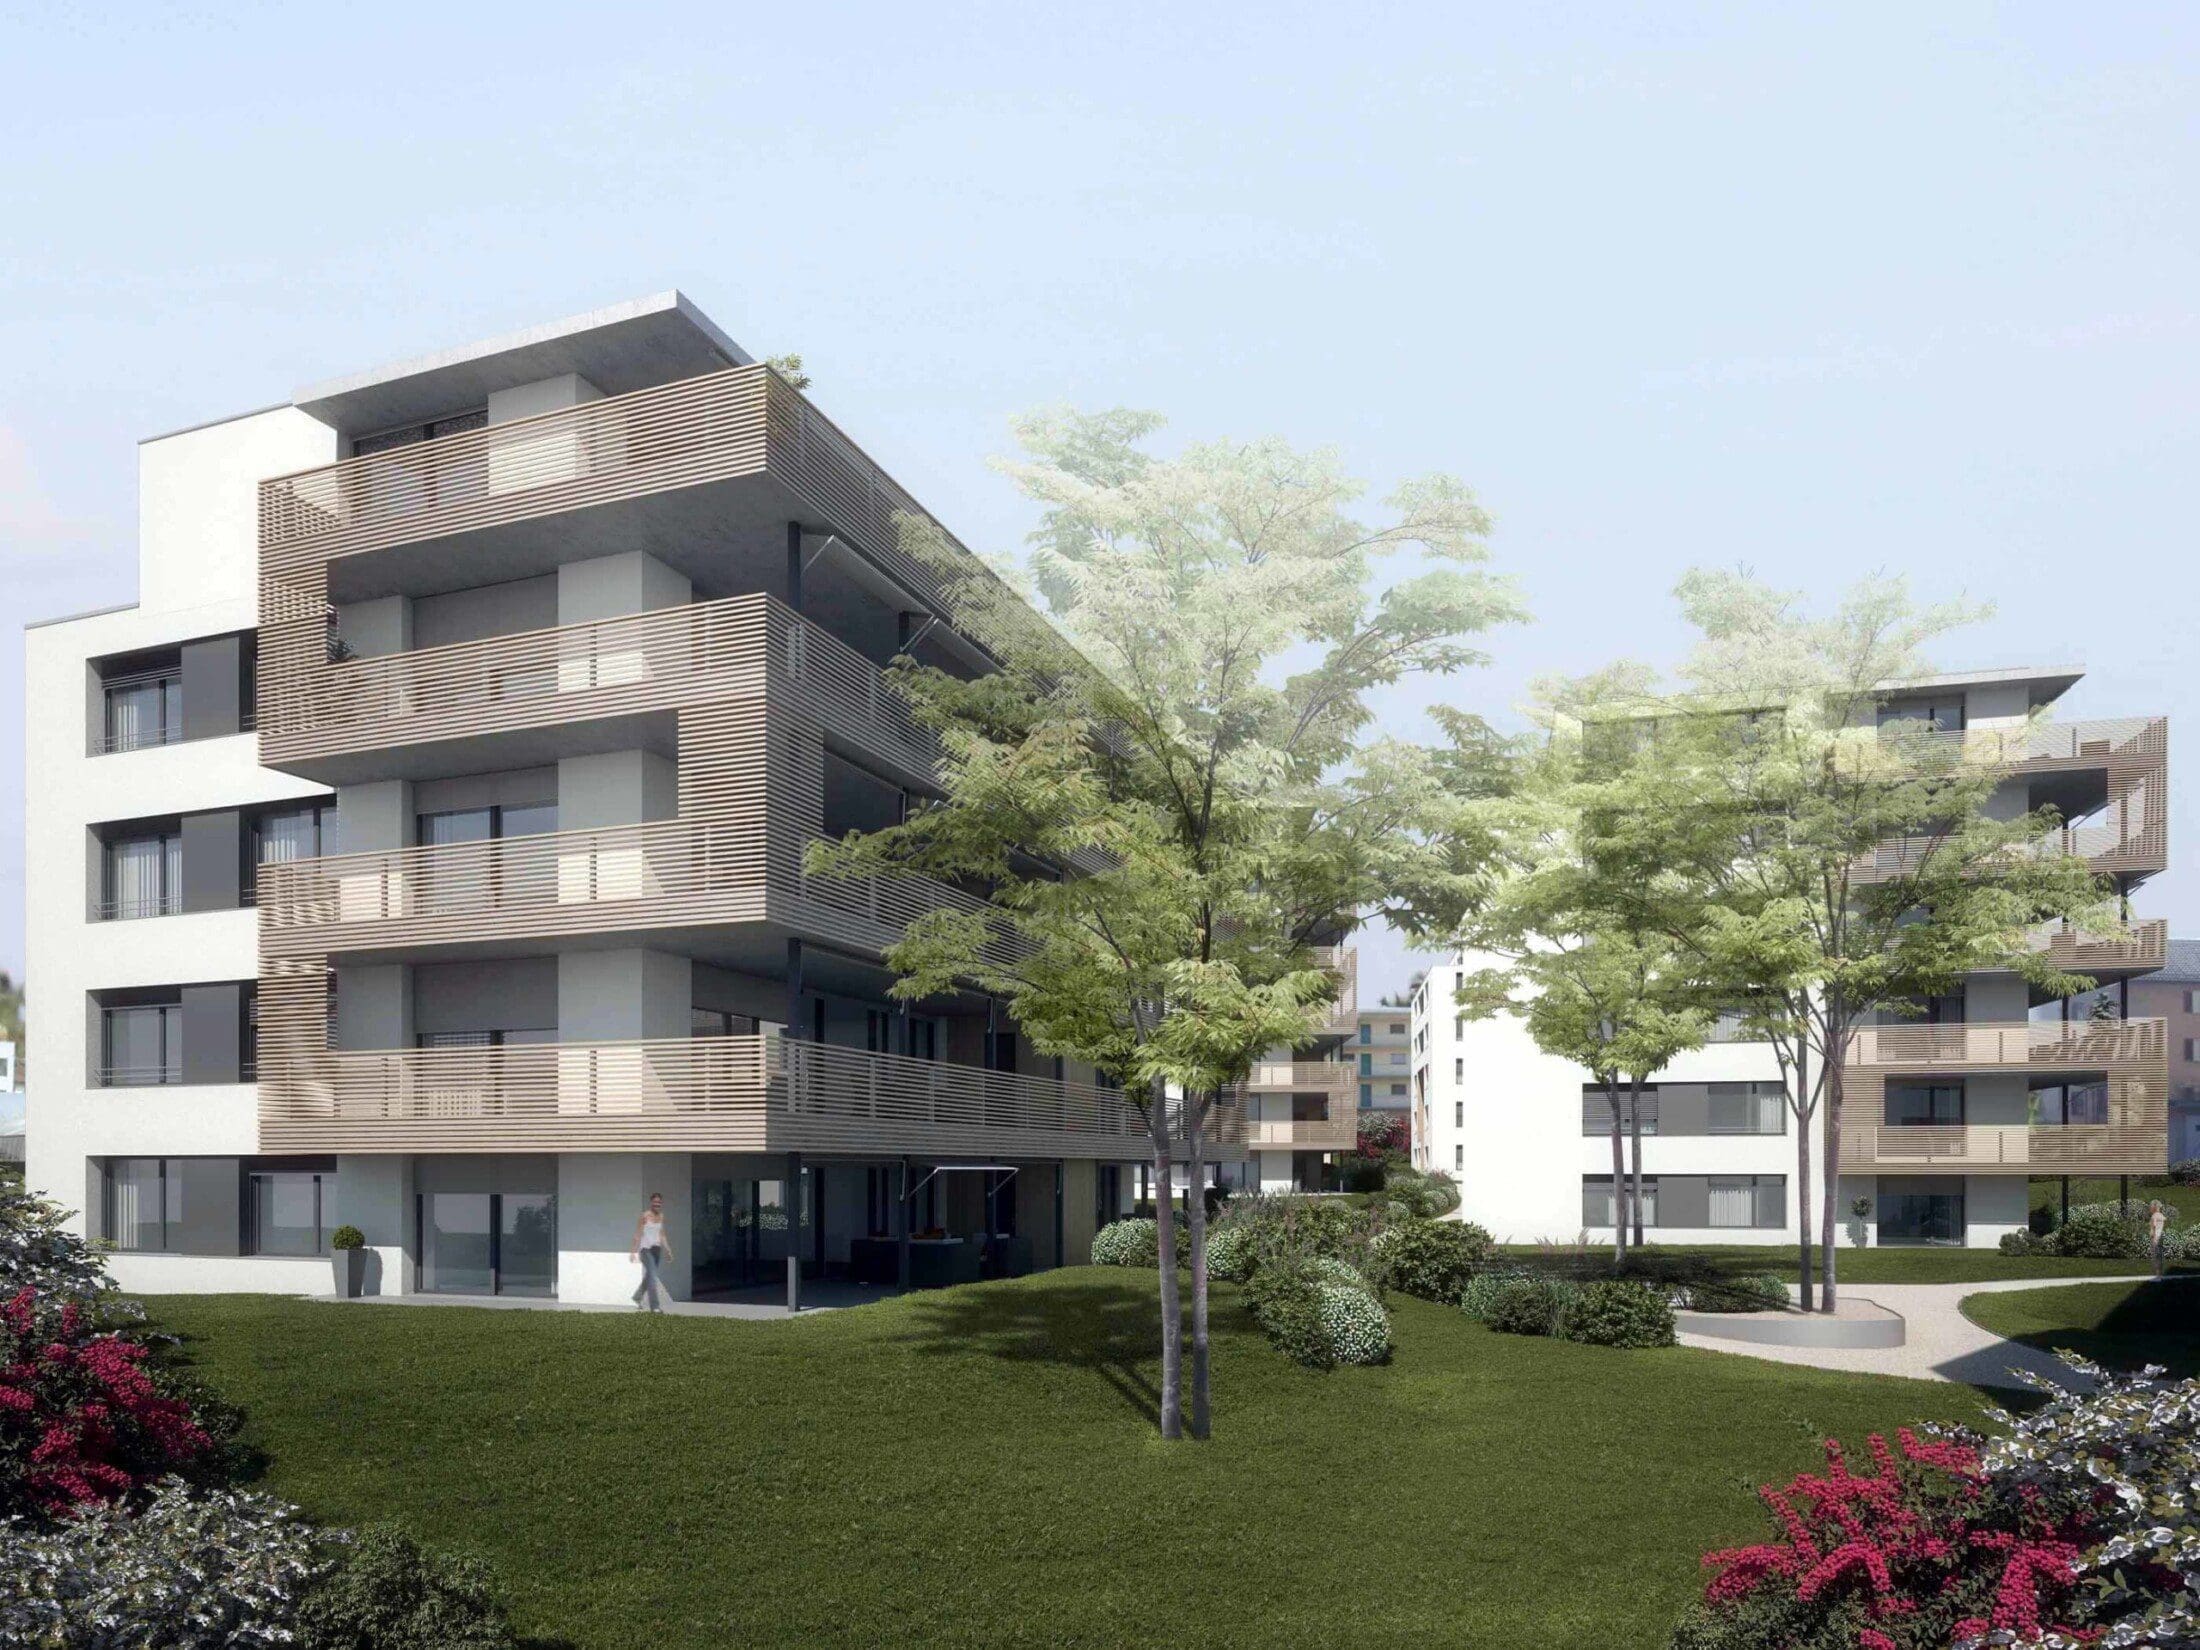 Neubau Immobilien - 3D Architektur Rendering für Marketing